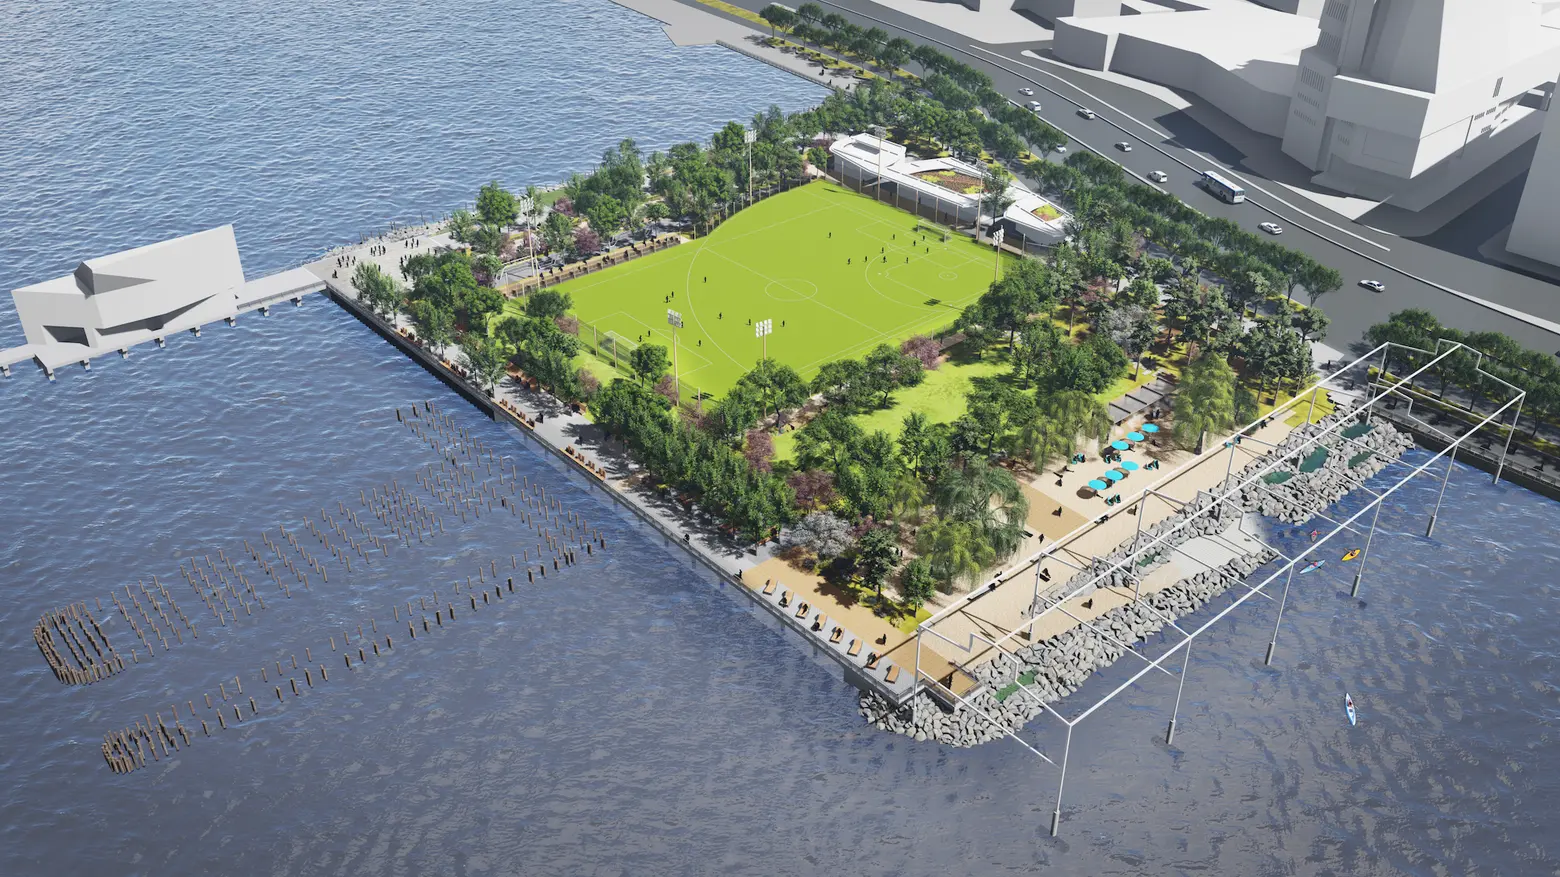 $70M plan to build Manhattan’s first public beach moves forward